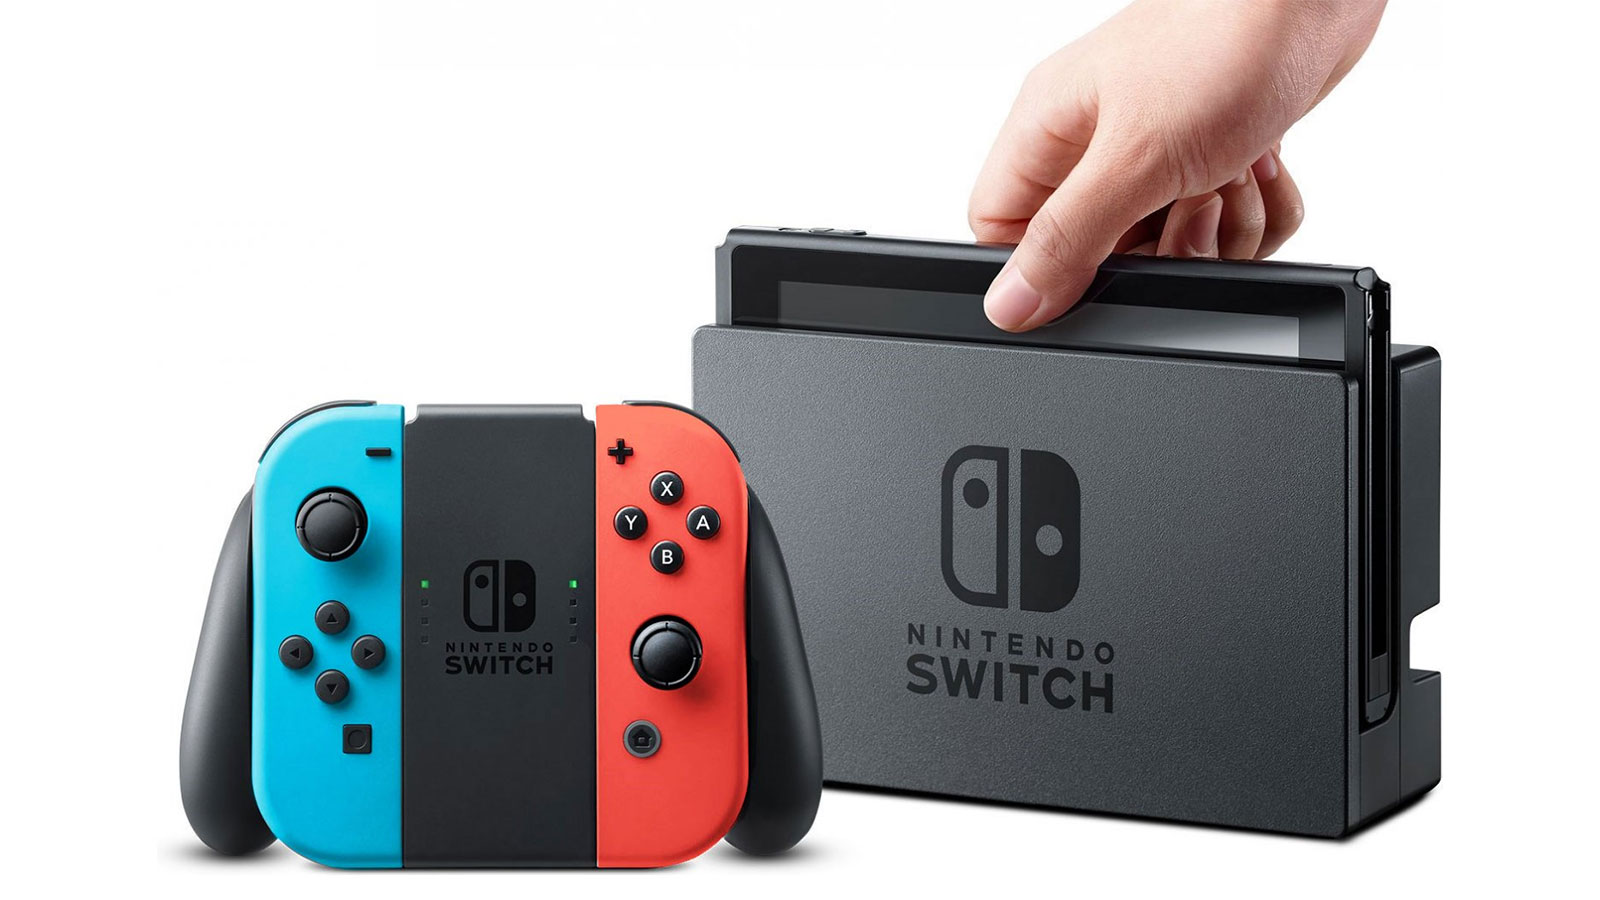 Nintendo-k 52,48 milioi kontsola saldu ditu dagoeneko Switch